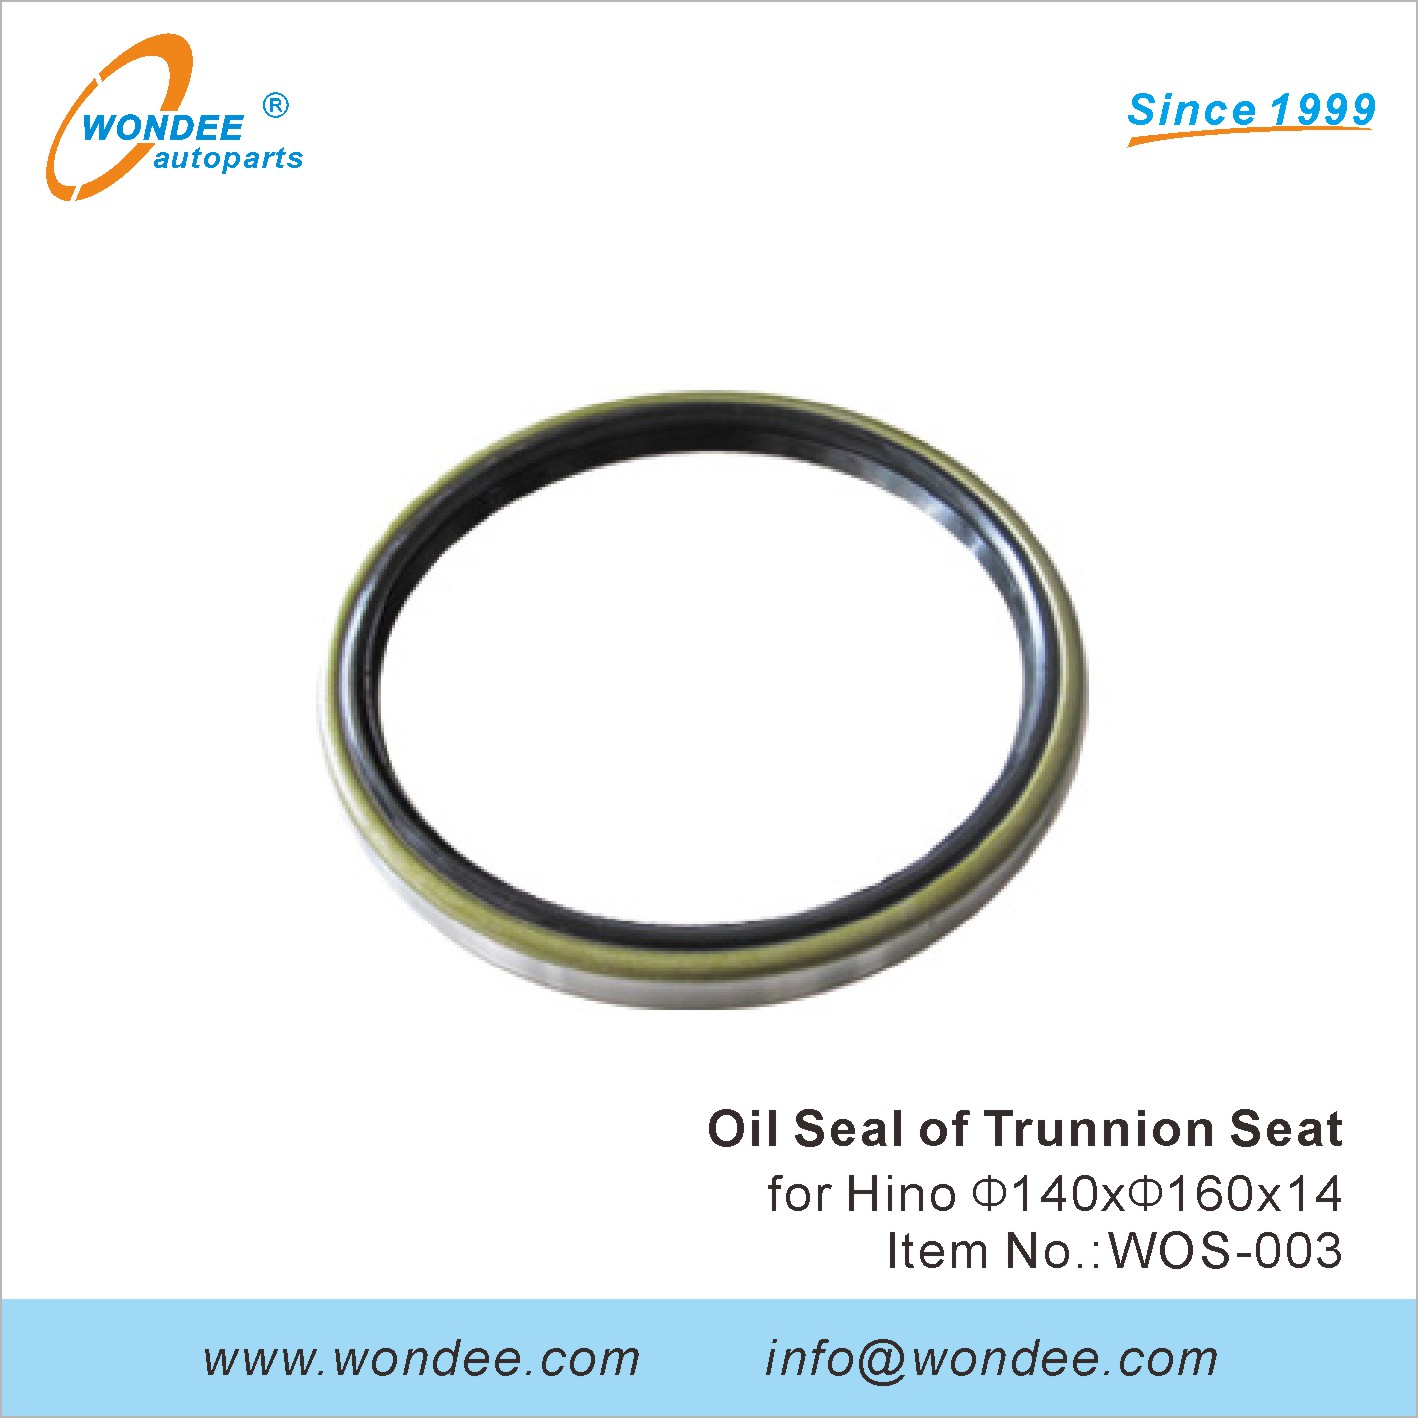 WONDEE oil seal of trunnion seat (3)